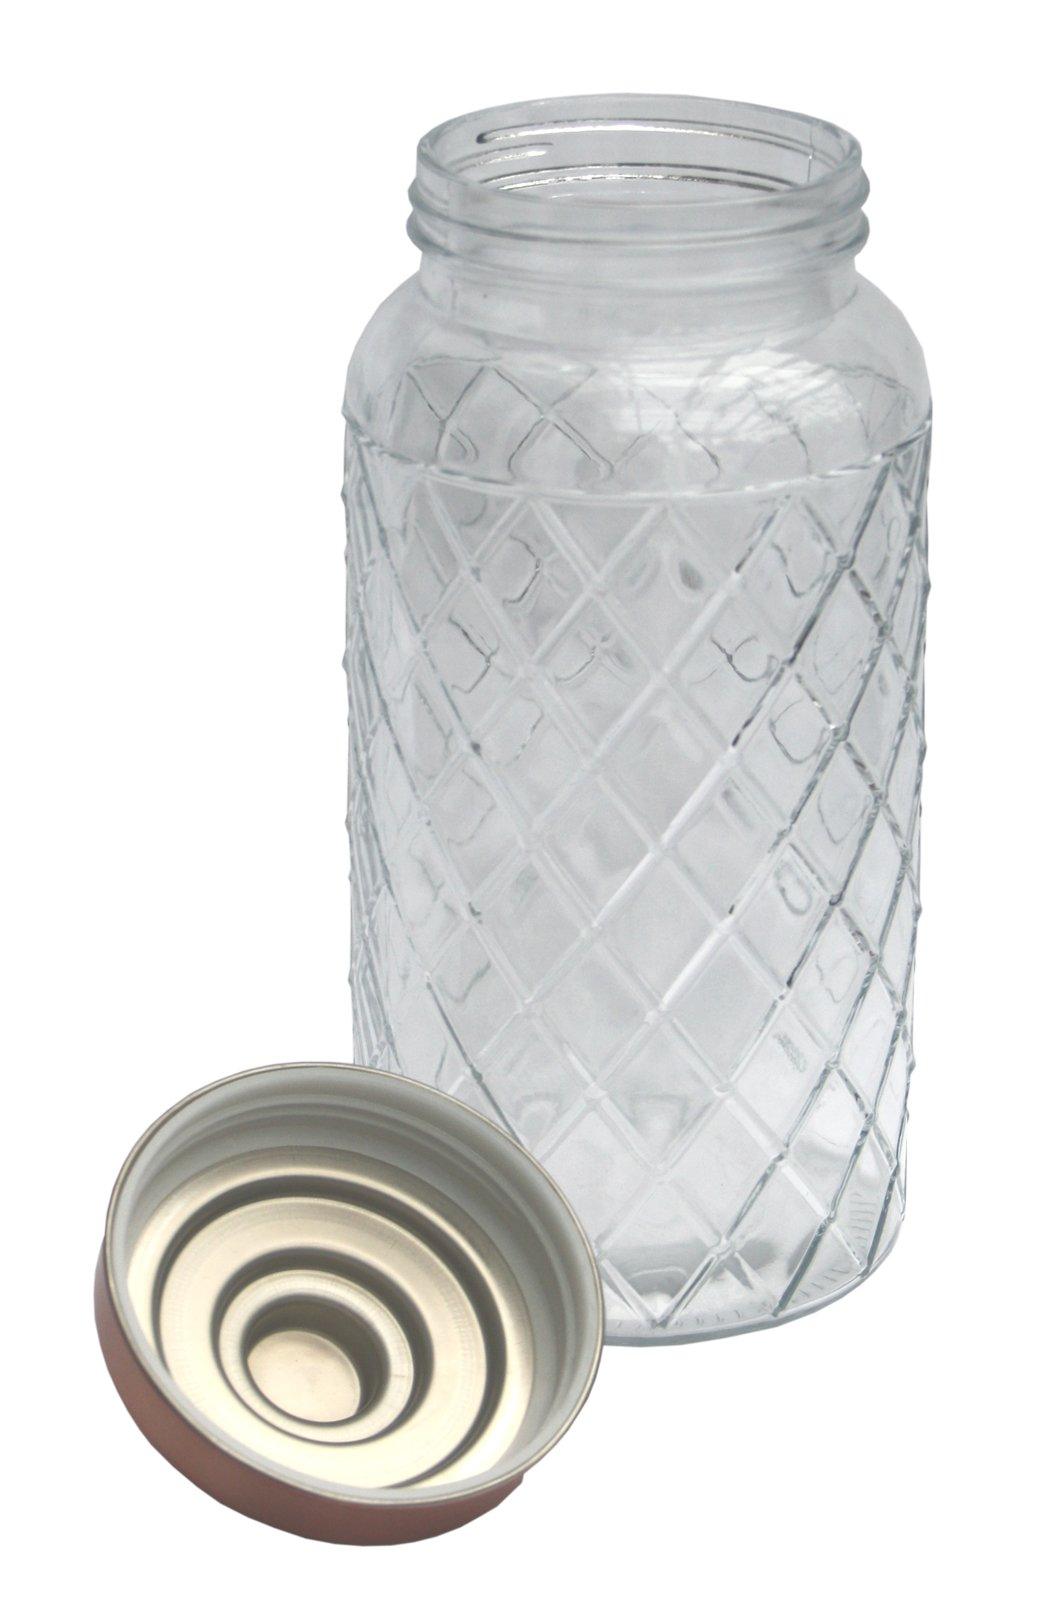 Round Glass Jar With Copper Lid - 9.5 Inch - £16.99 - Kitchen Storage 